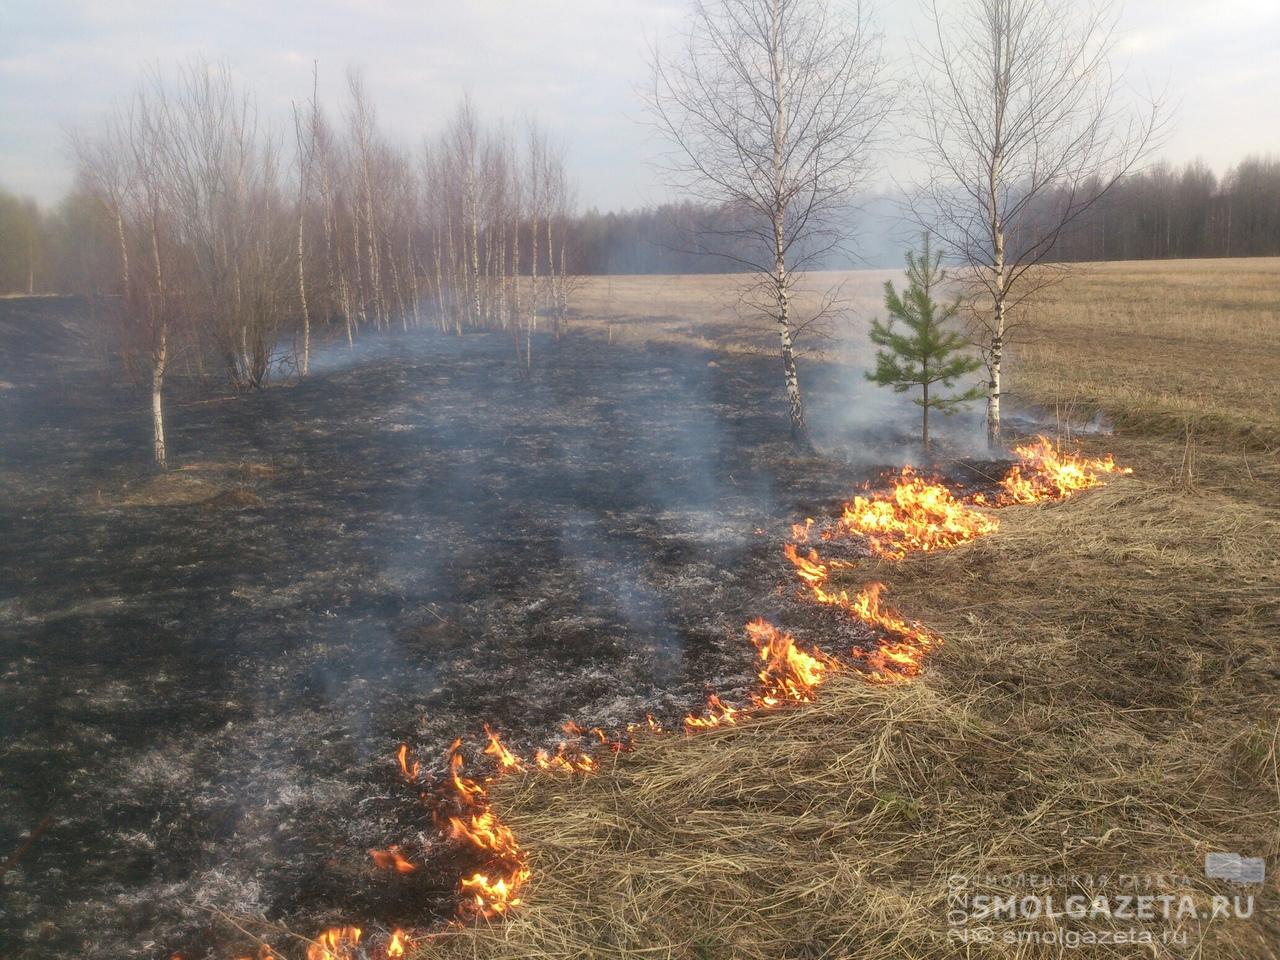 957 палов сухой травы произошло на территории Смоленской области с начала года